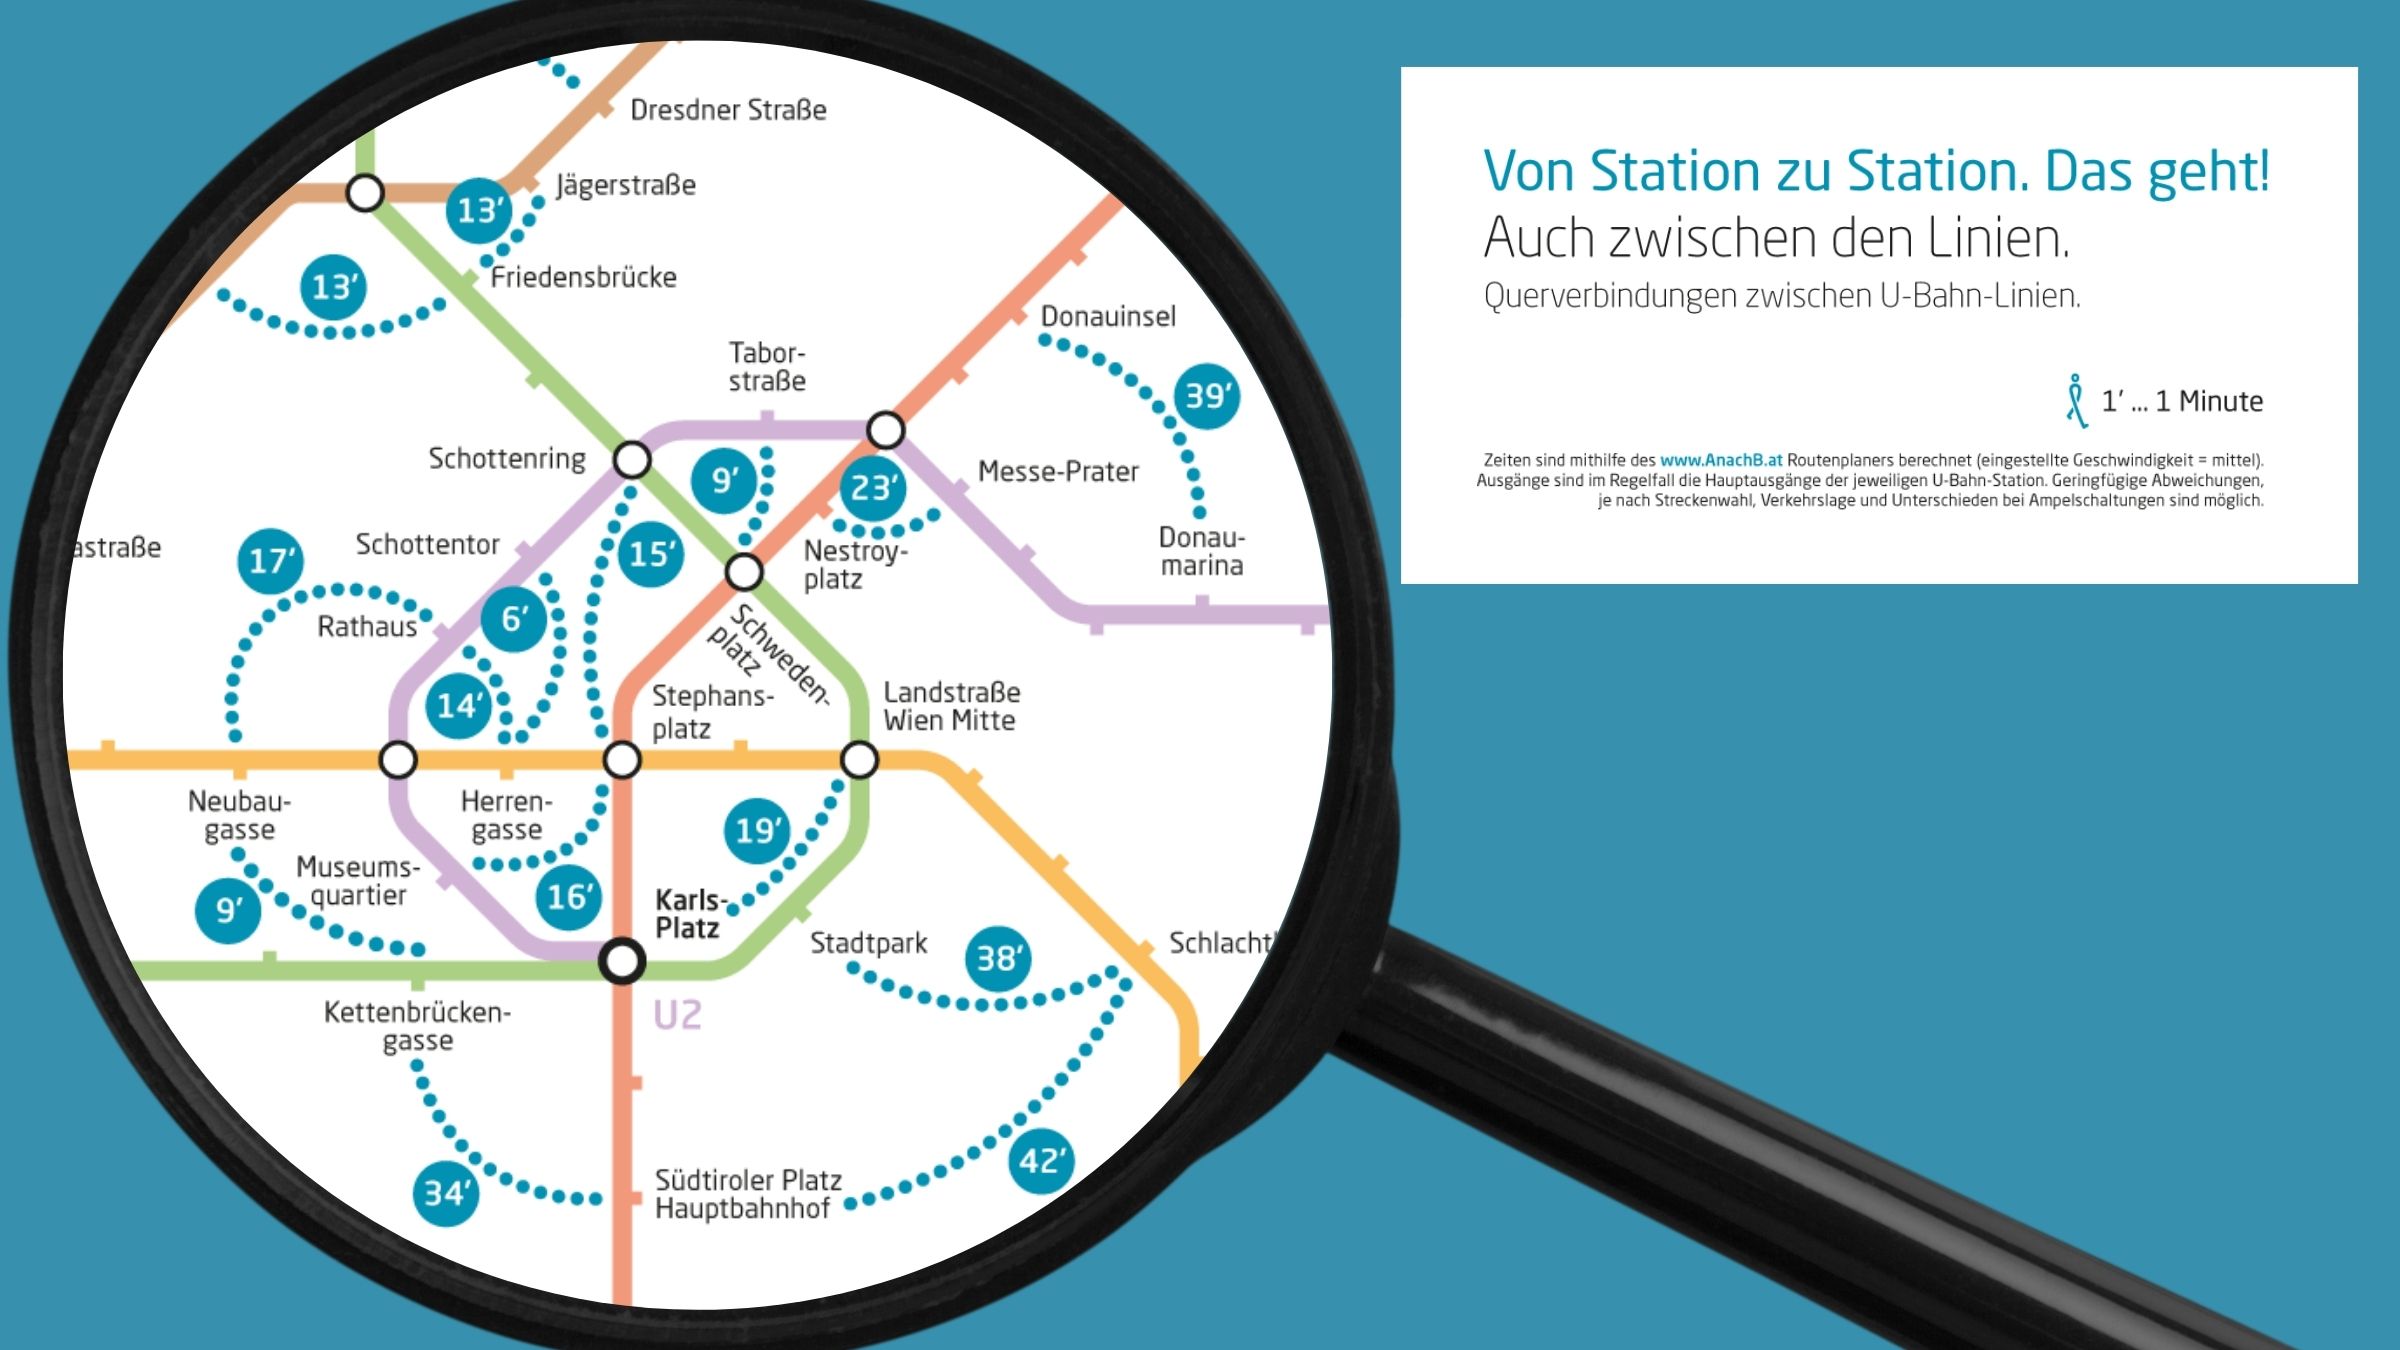 Die Grafik zeigt eine Karte mit Gehminuten zwischen einzelnen U-Bahn-Stationen